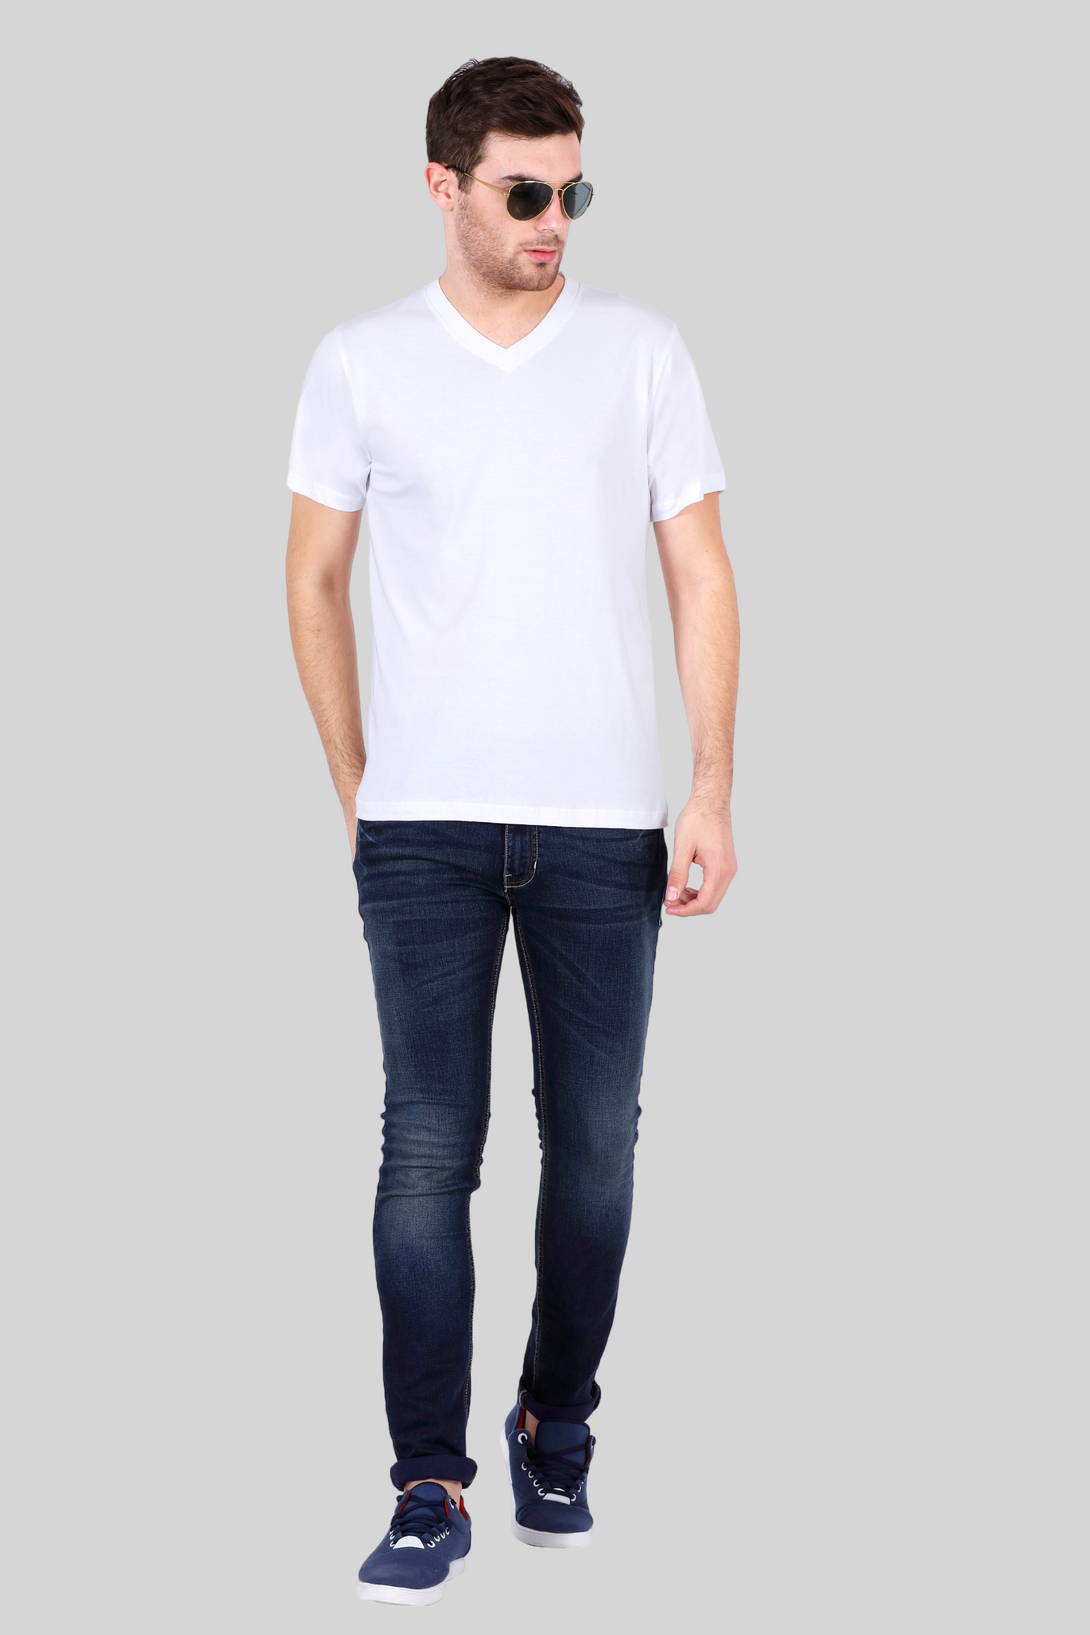 White V Neck T-Shirt For Men - WowWaves - 7